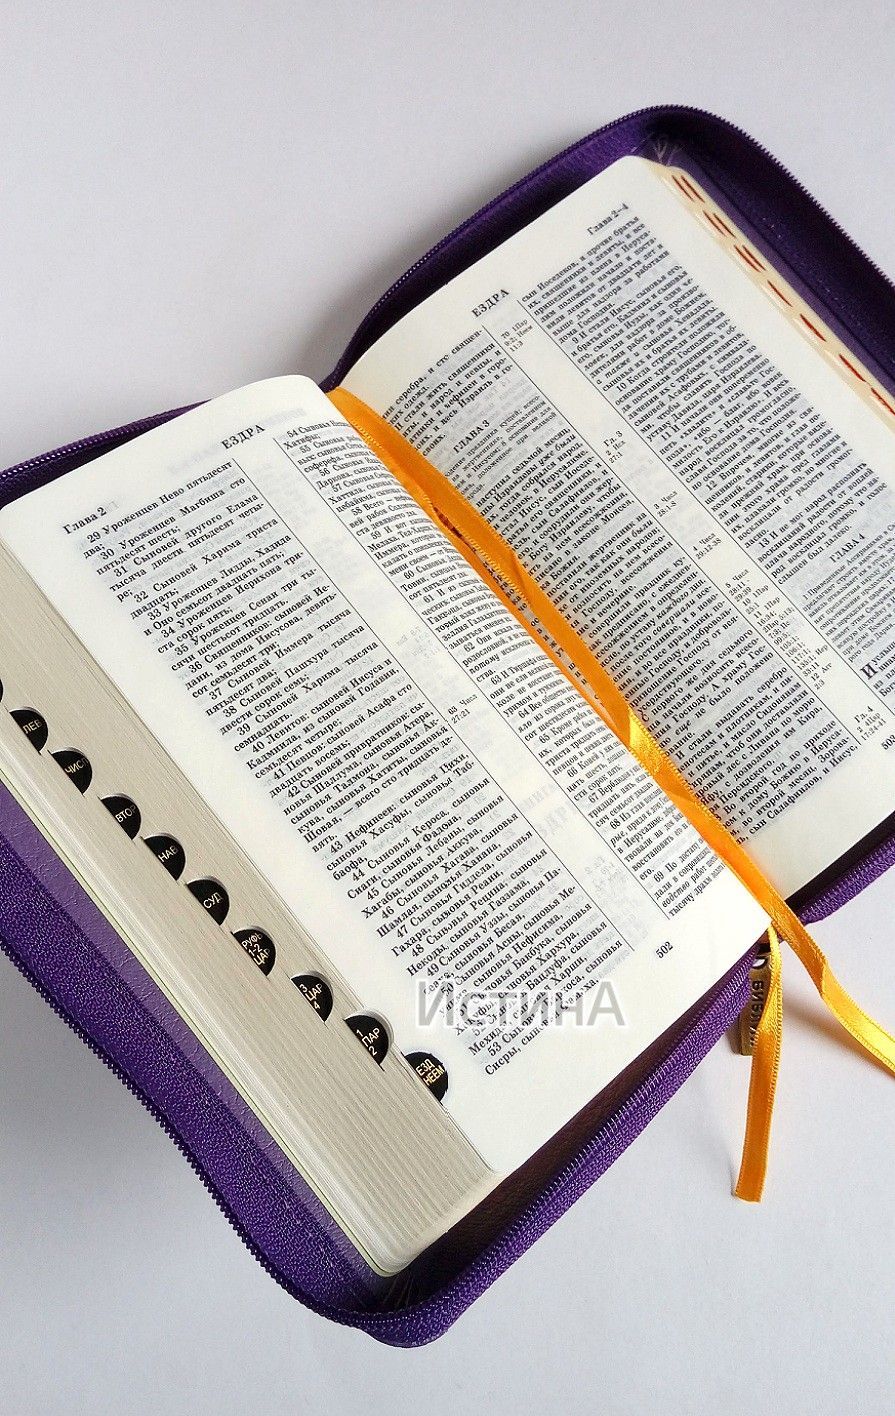 БИБЛИЯ 047zti кожаный переплет с молнией и индексами,  золотой крест и терновый венец, цвет фиолетовый,средний формат, 120*165 мм, код 1122